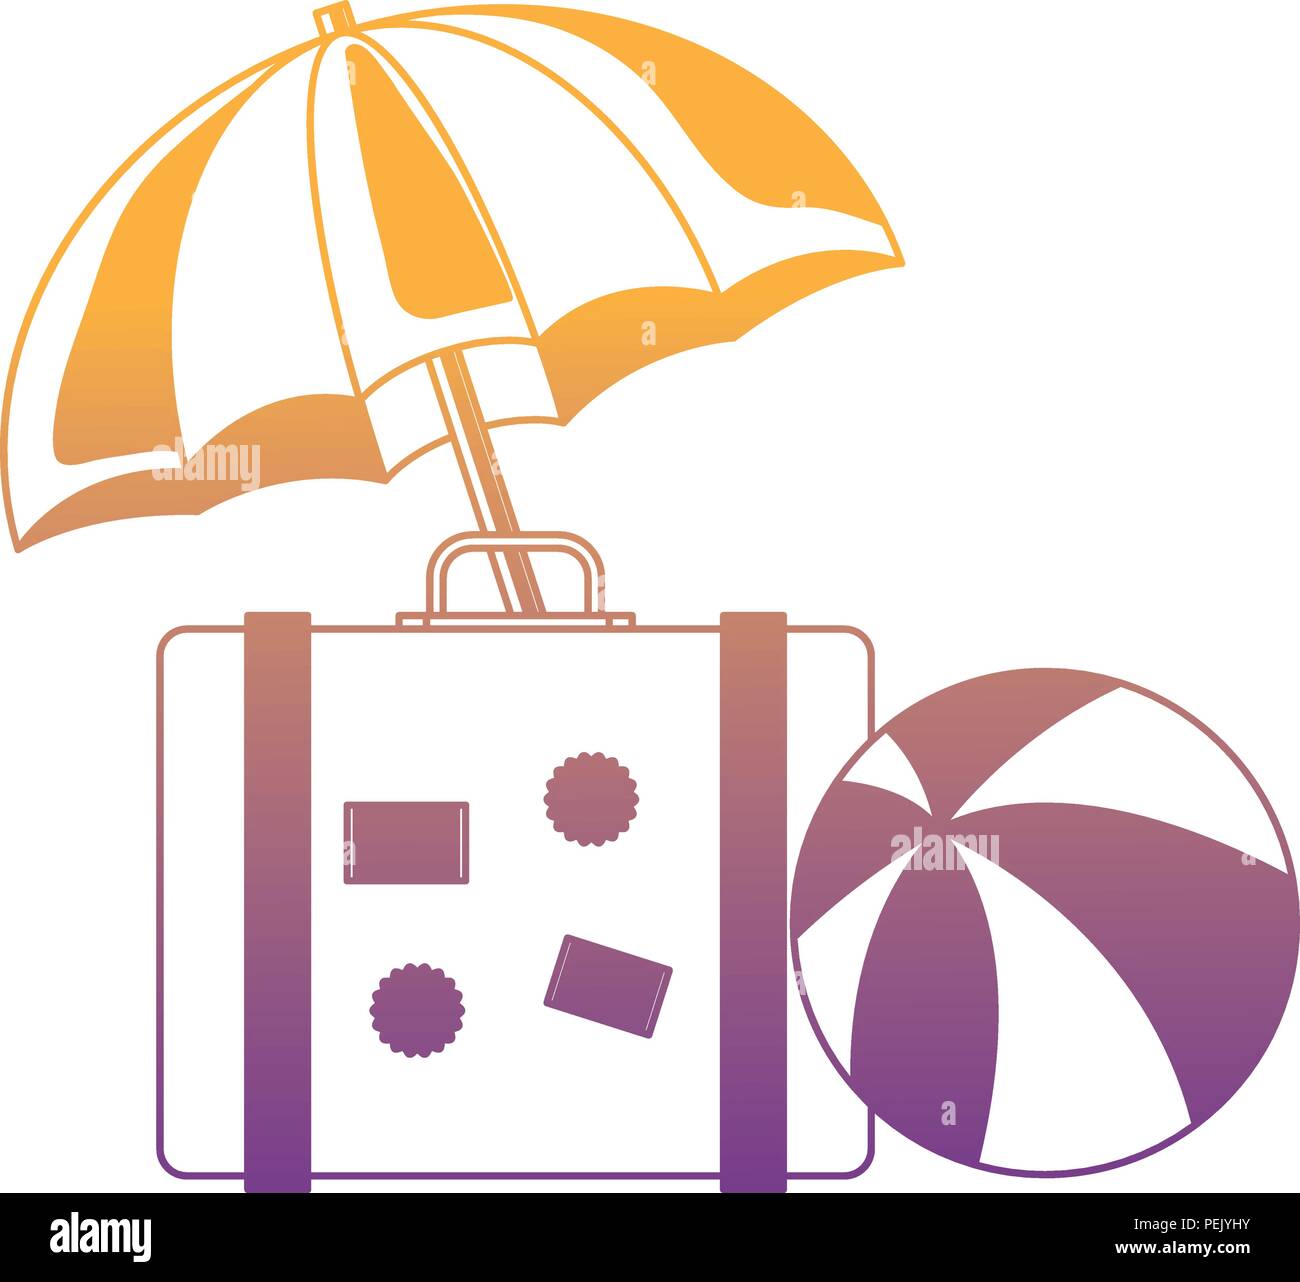 Valise de voyage plage avec parasol et bal sur fond blanc, vector  illustration Image Vectorielle Stock - Alamy